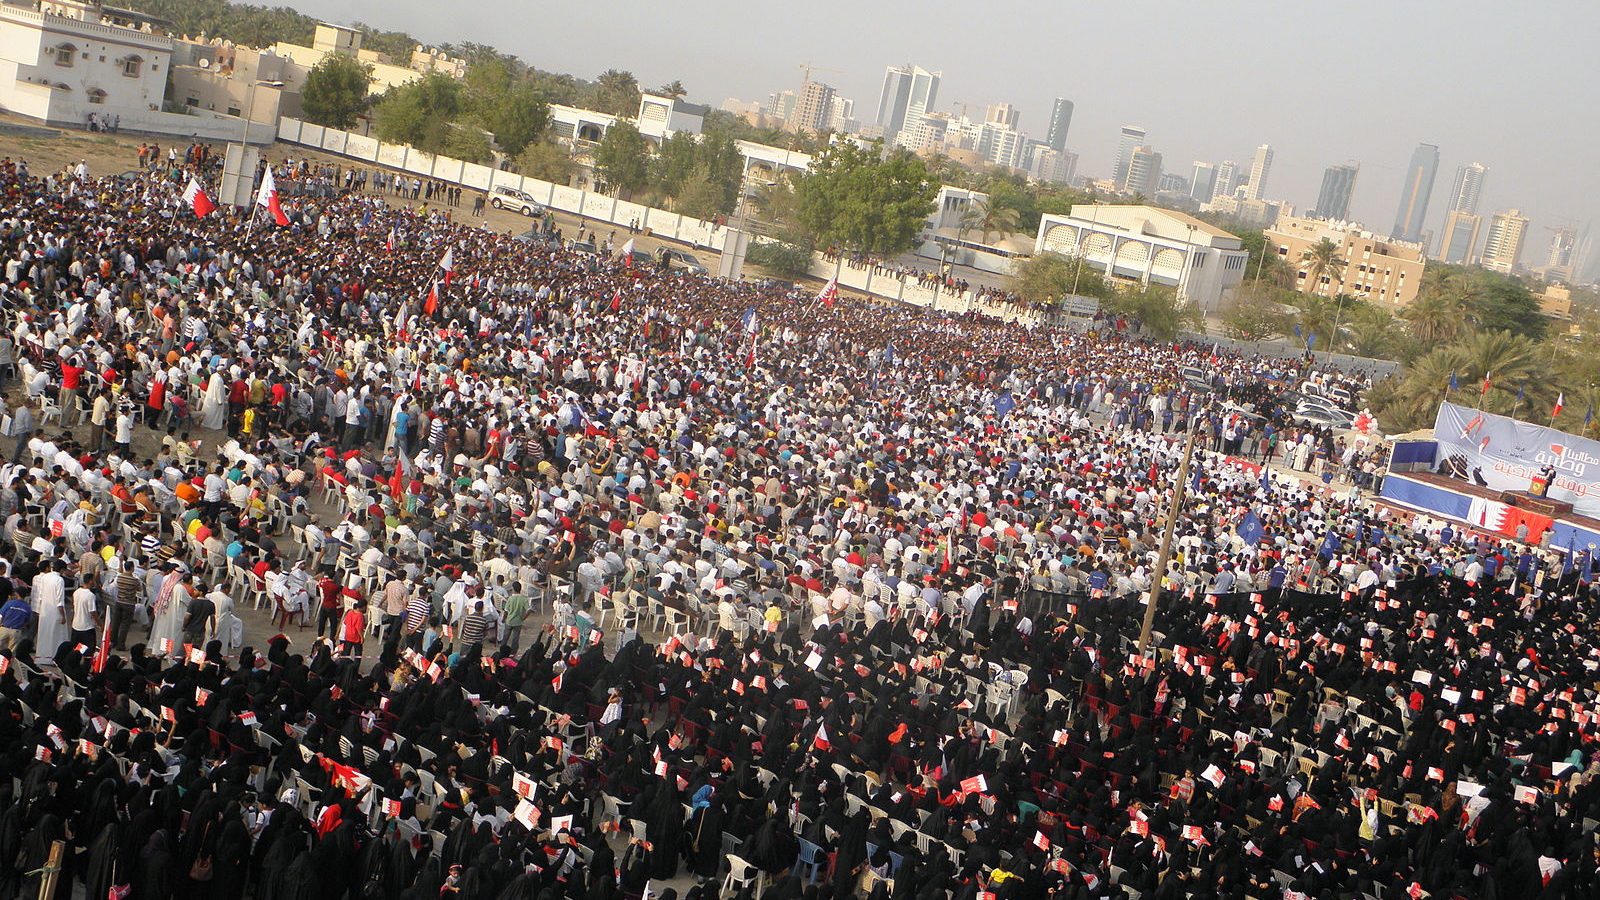 Protestors gather to demand a democratic government in Bahrain, 2011